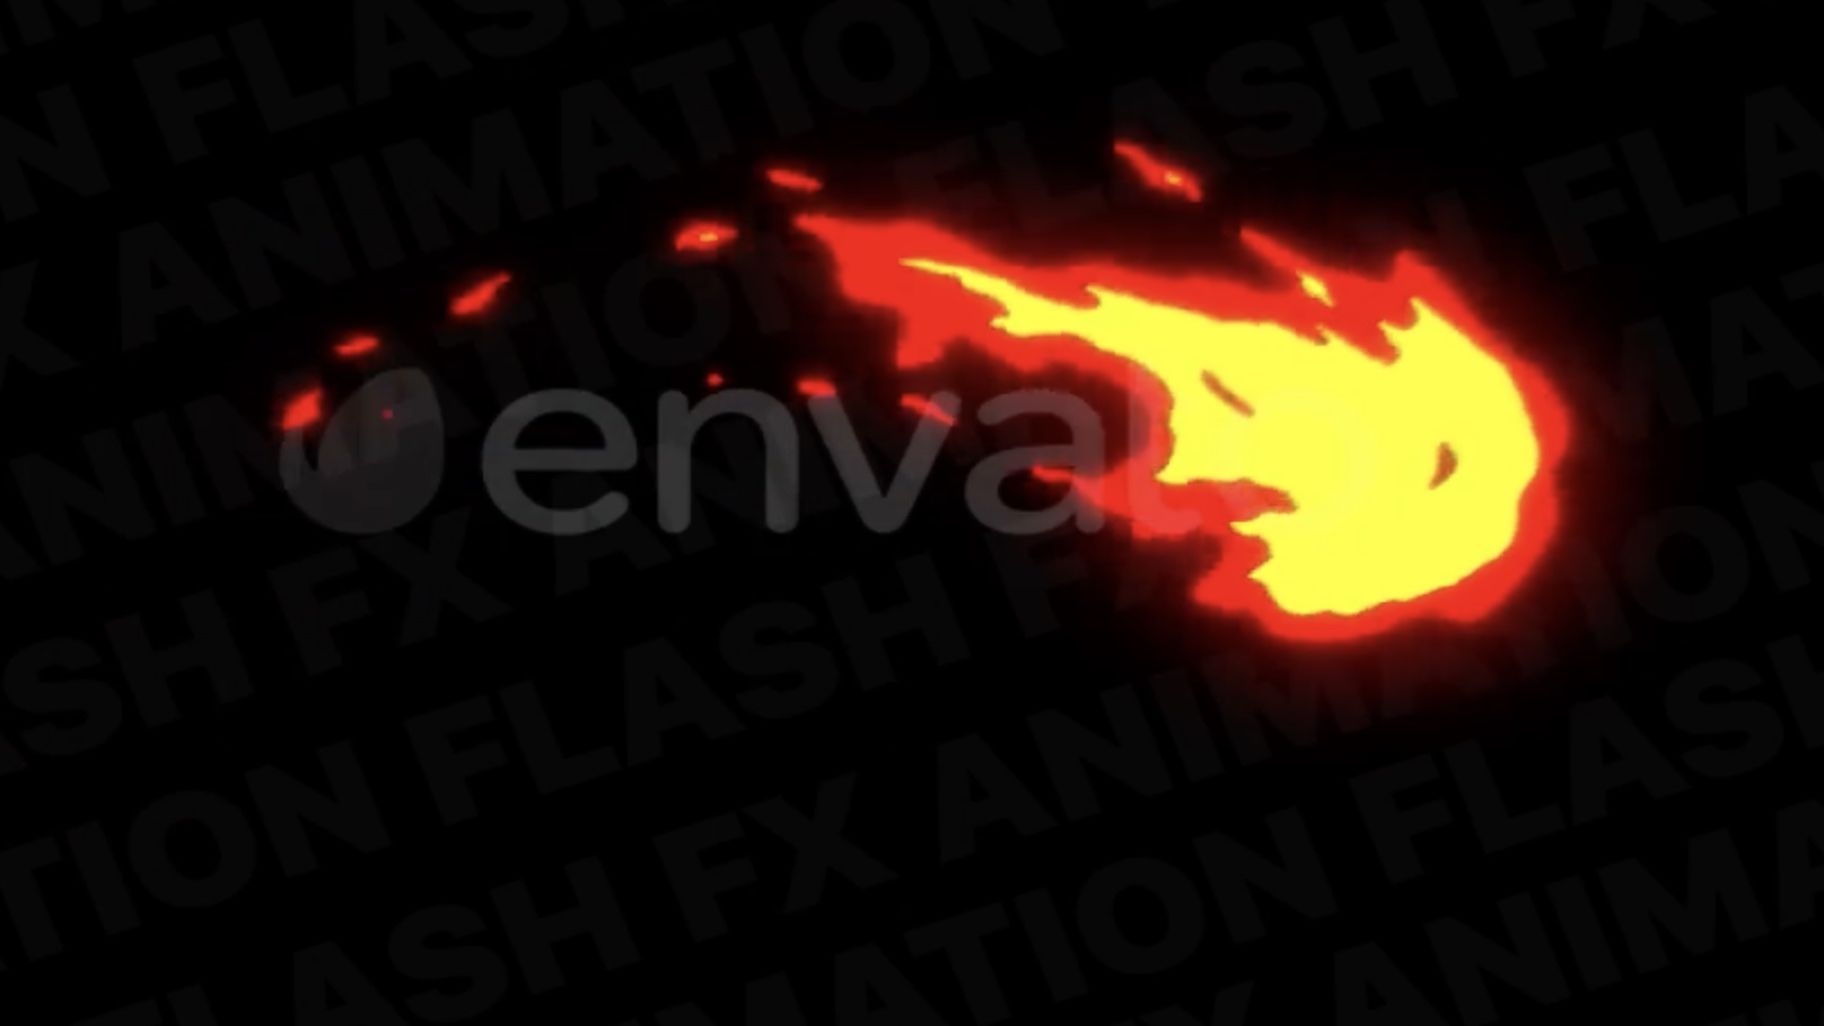 Flash FX火元素动态视频素材图形包